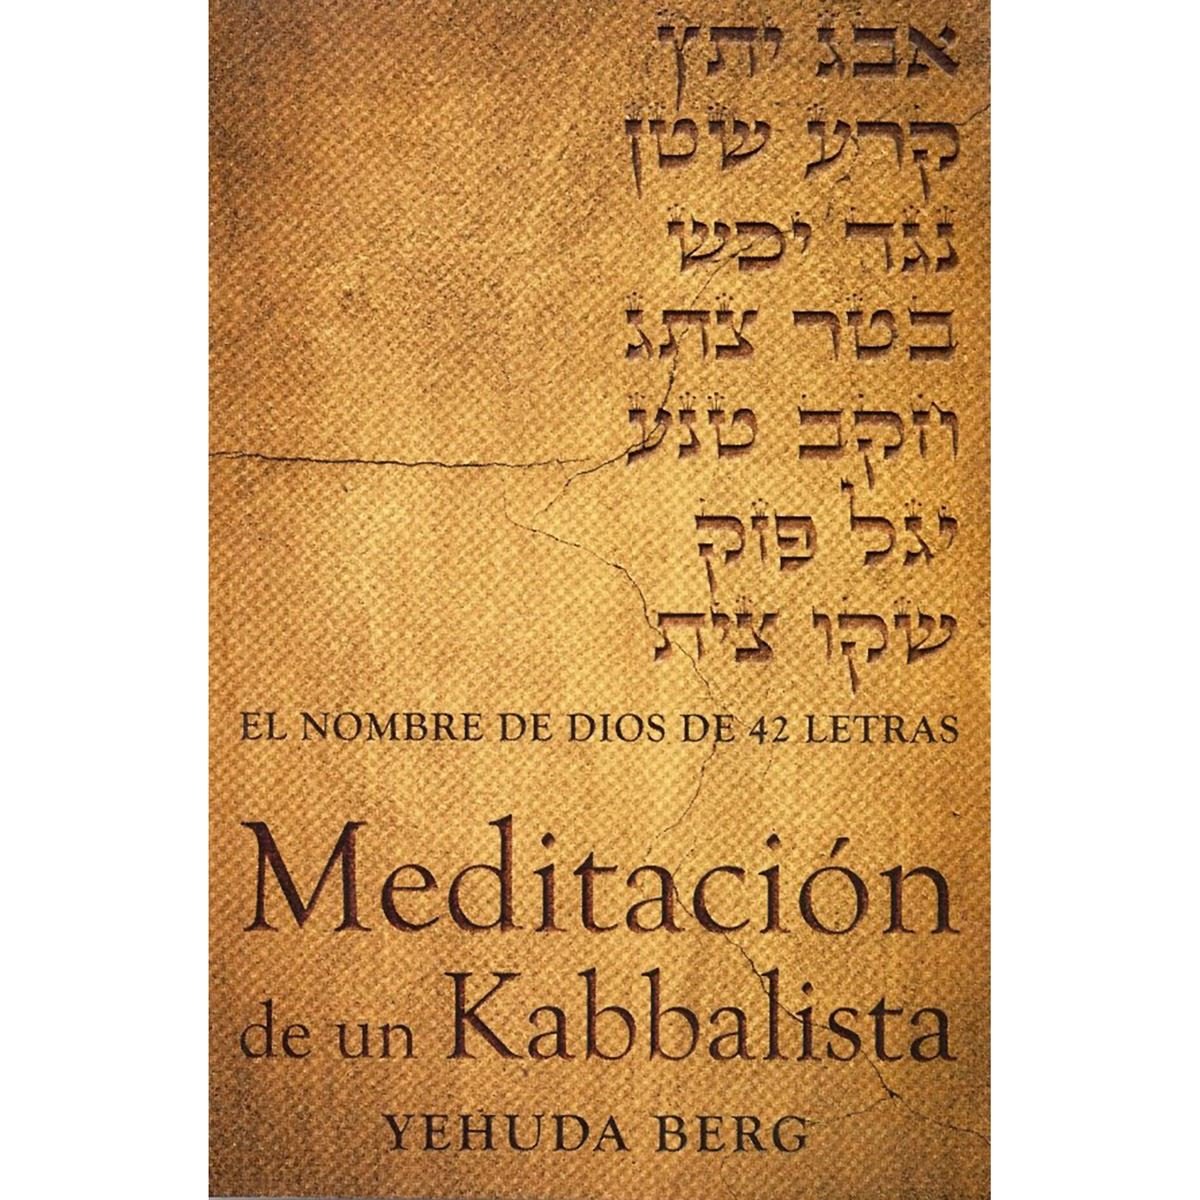 Meditacion de un kabbalista